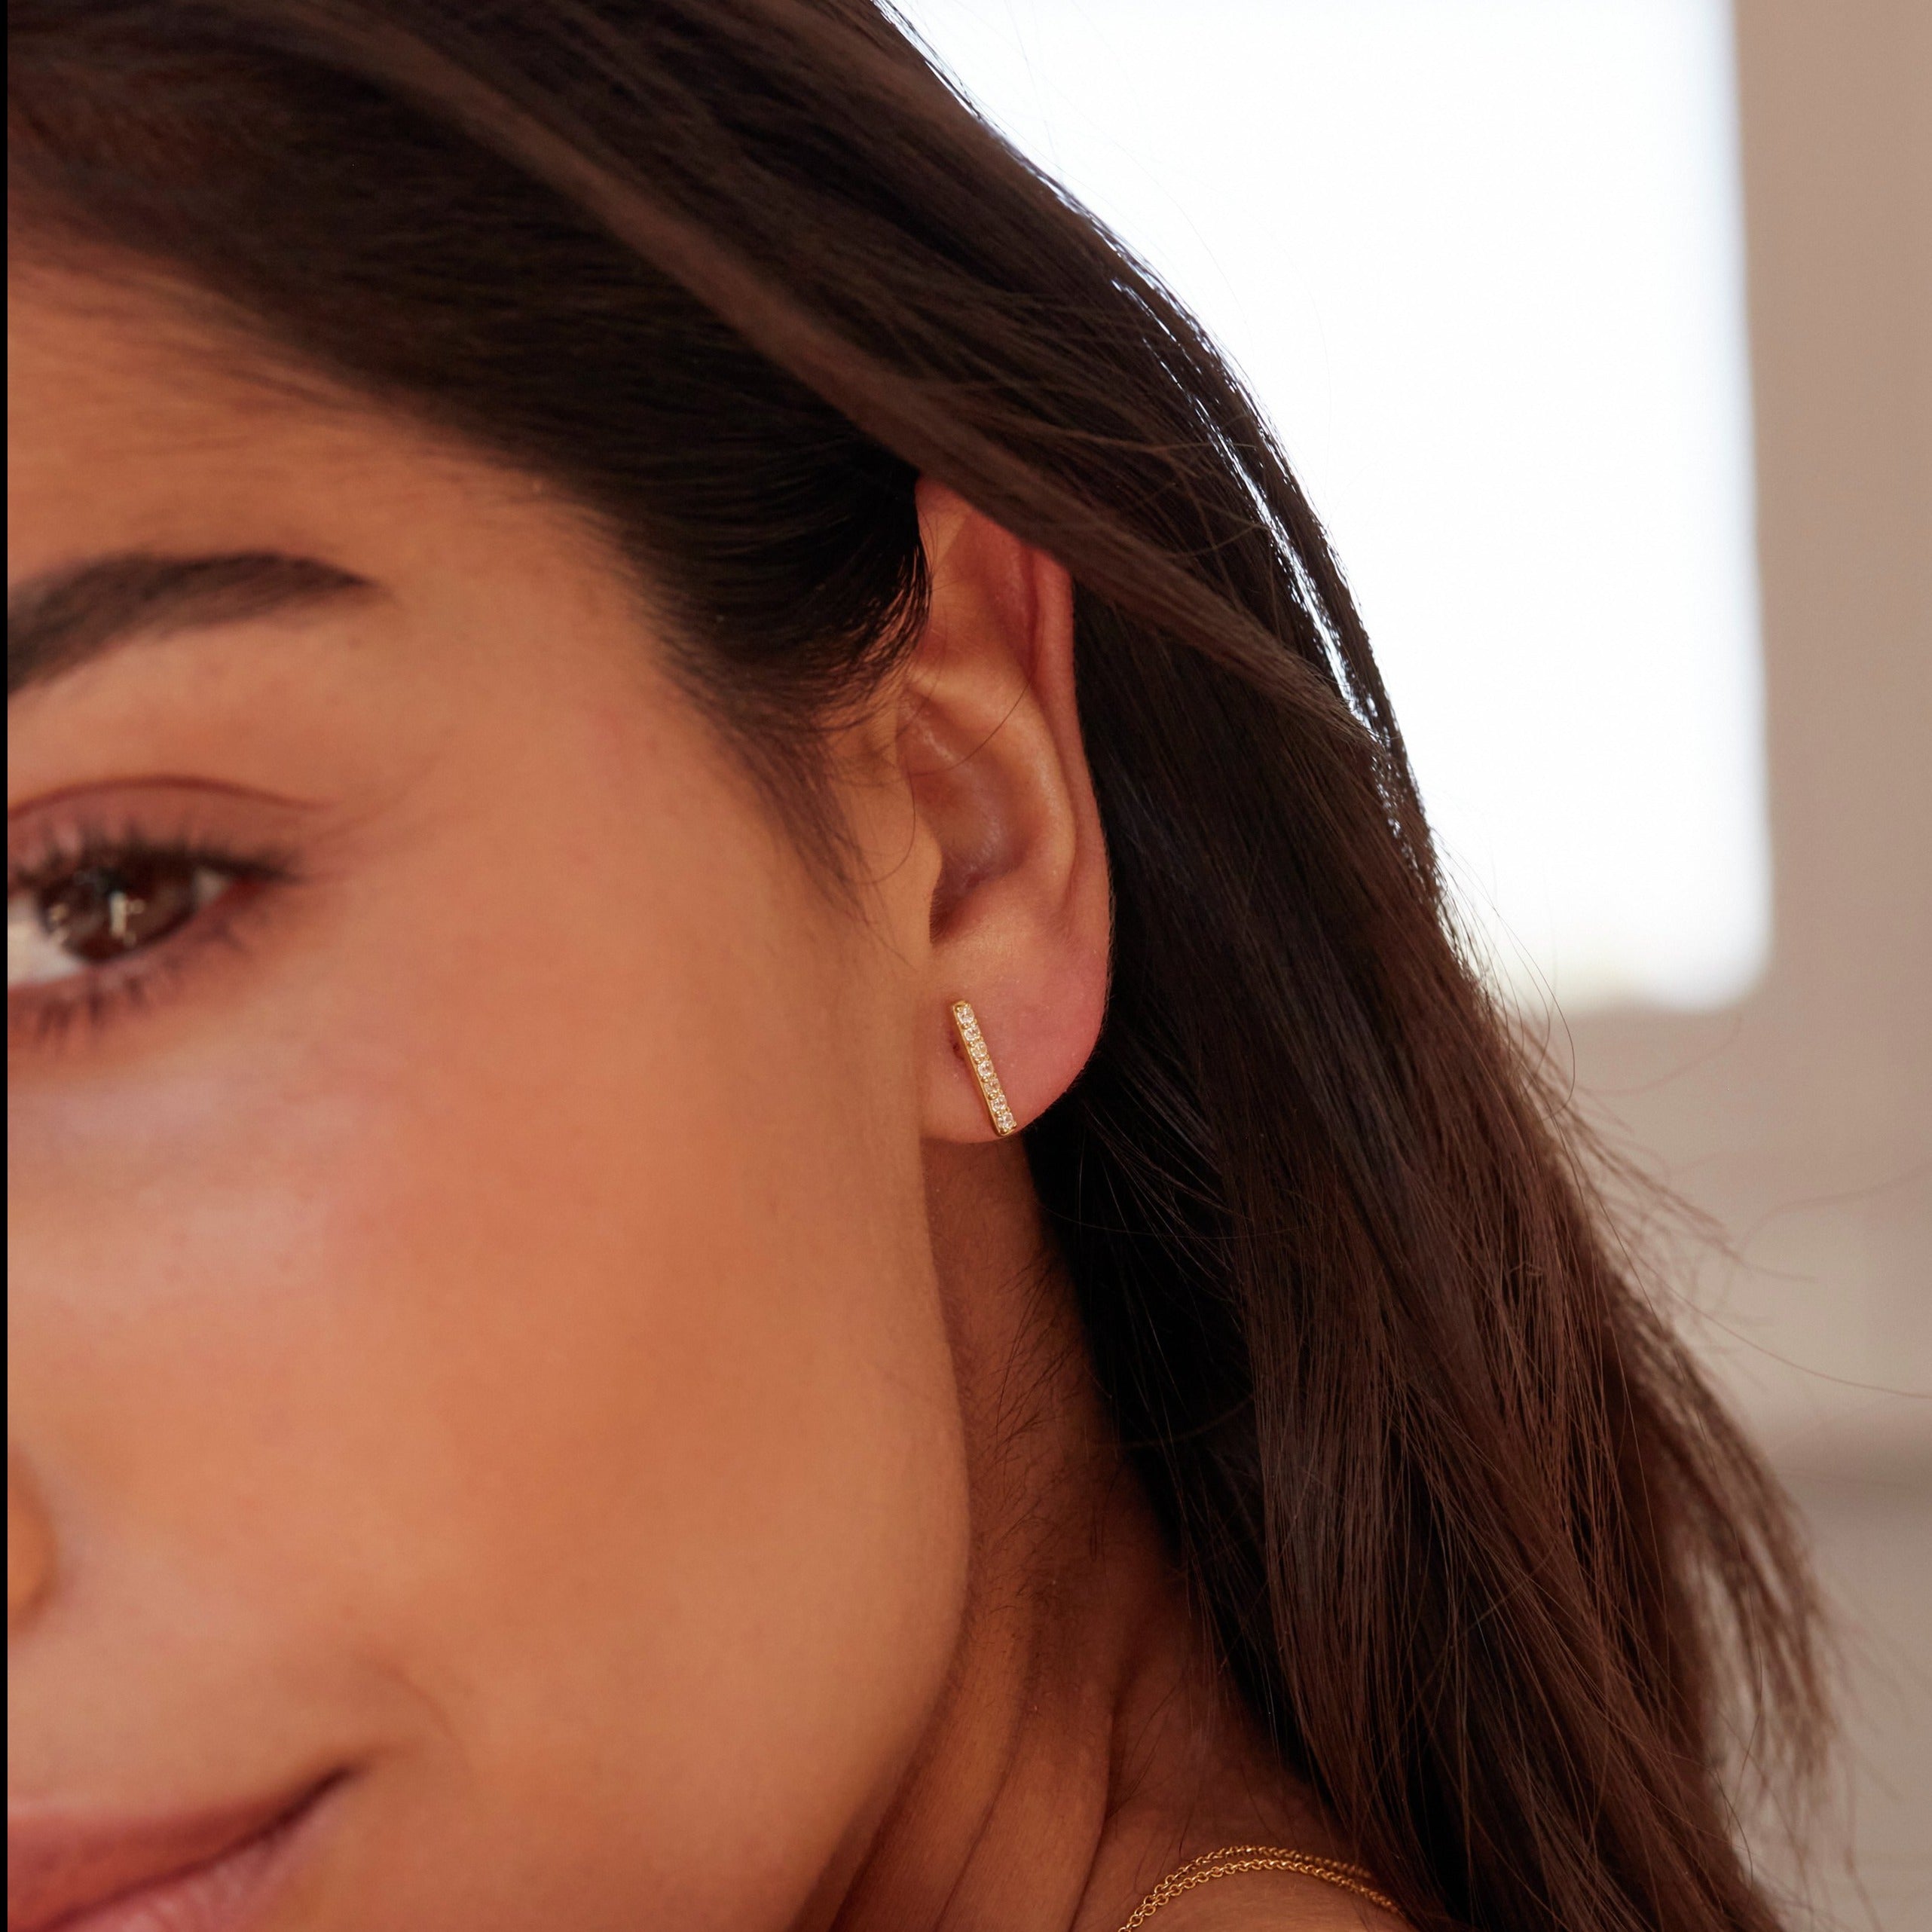 Silver diamond style bar stud earring in one ear lobe 